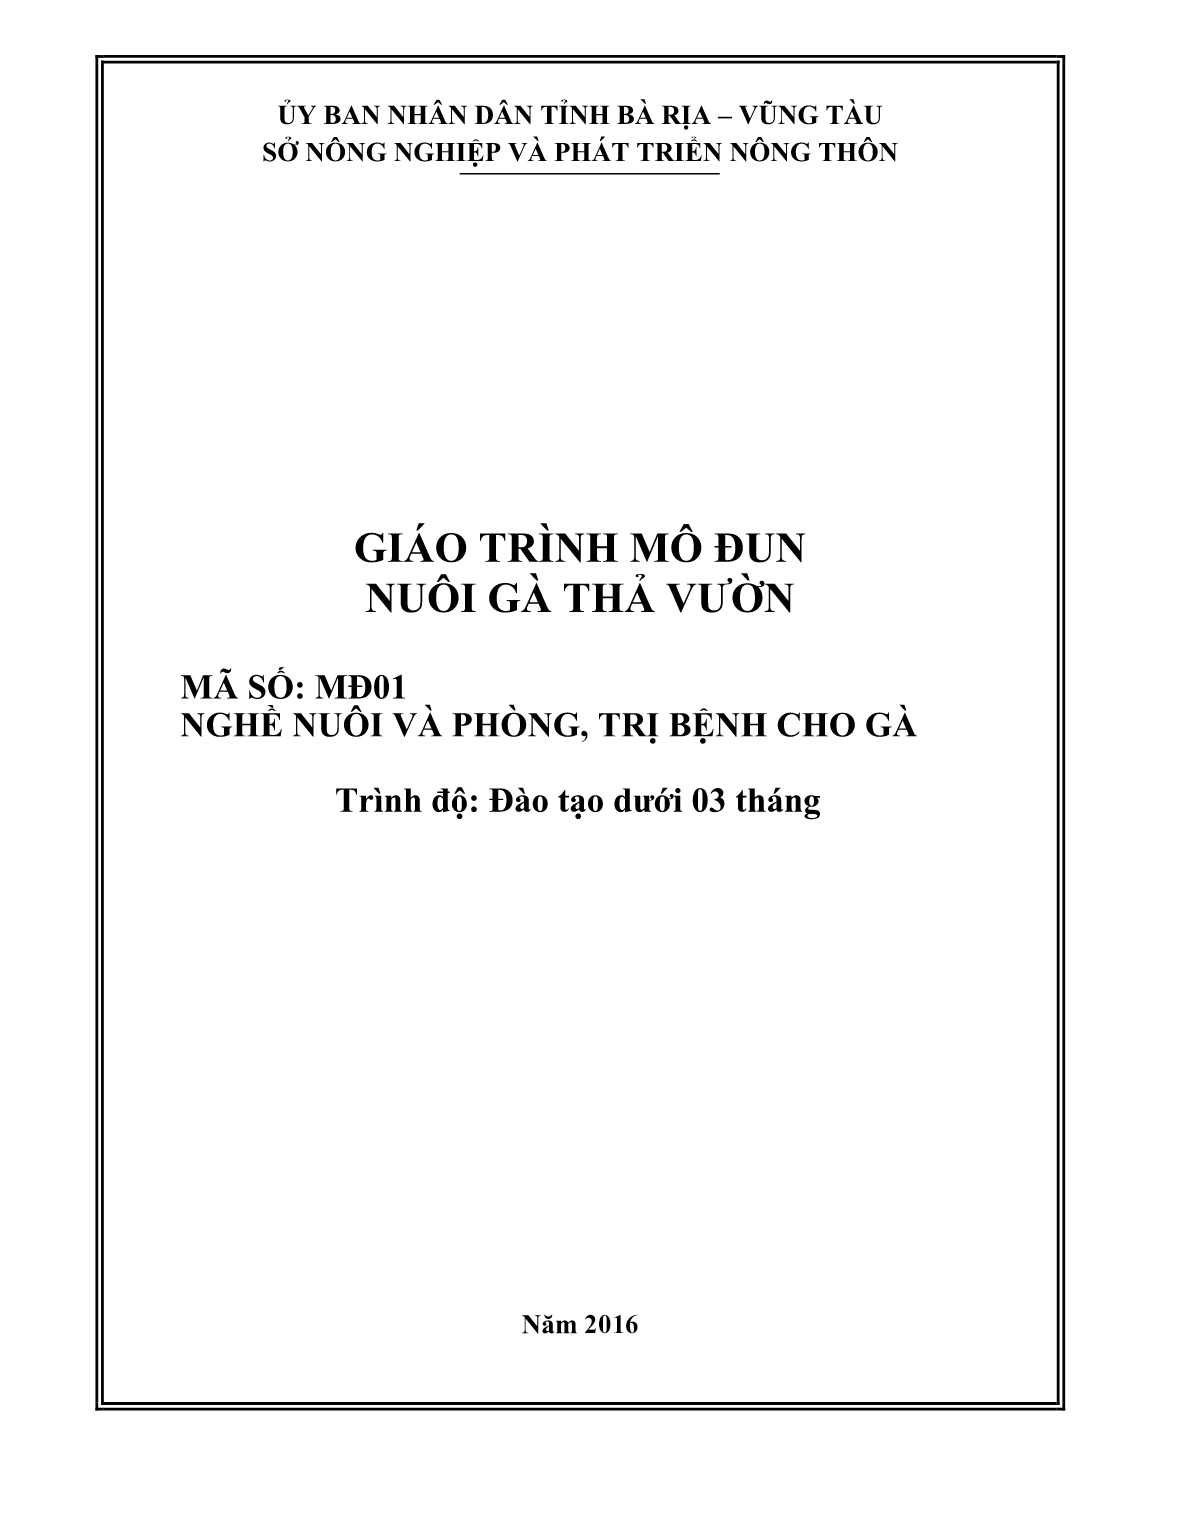 Giáo trình mô đun Nuôi gà thả vườn (Trình độ: Đào tạo dưới 03 tháng) trang 2